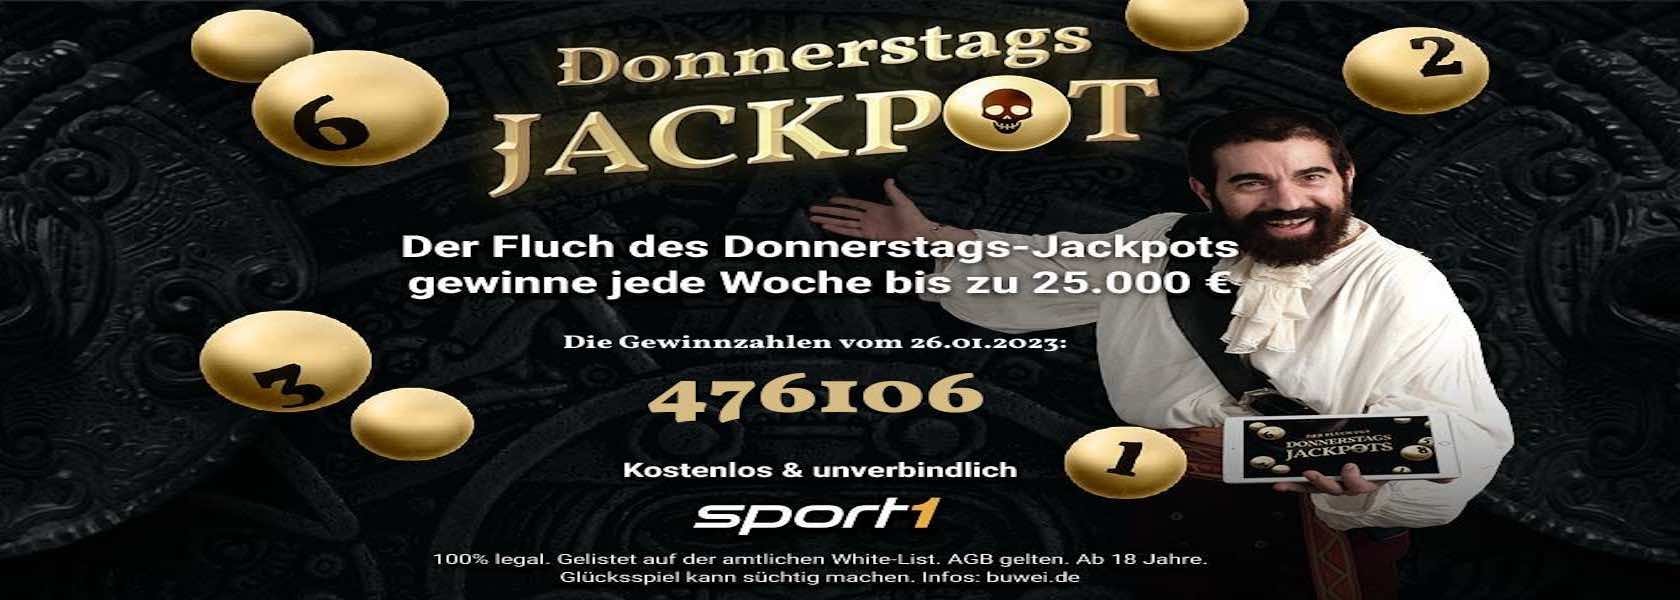 donnerstags-jackpot-26012023-1680x600